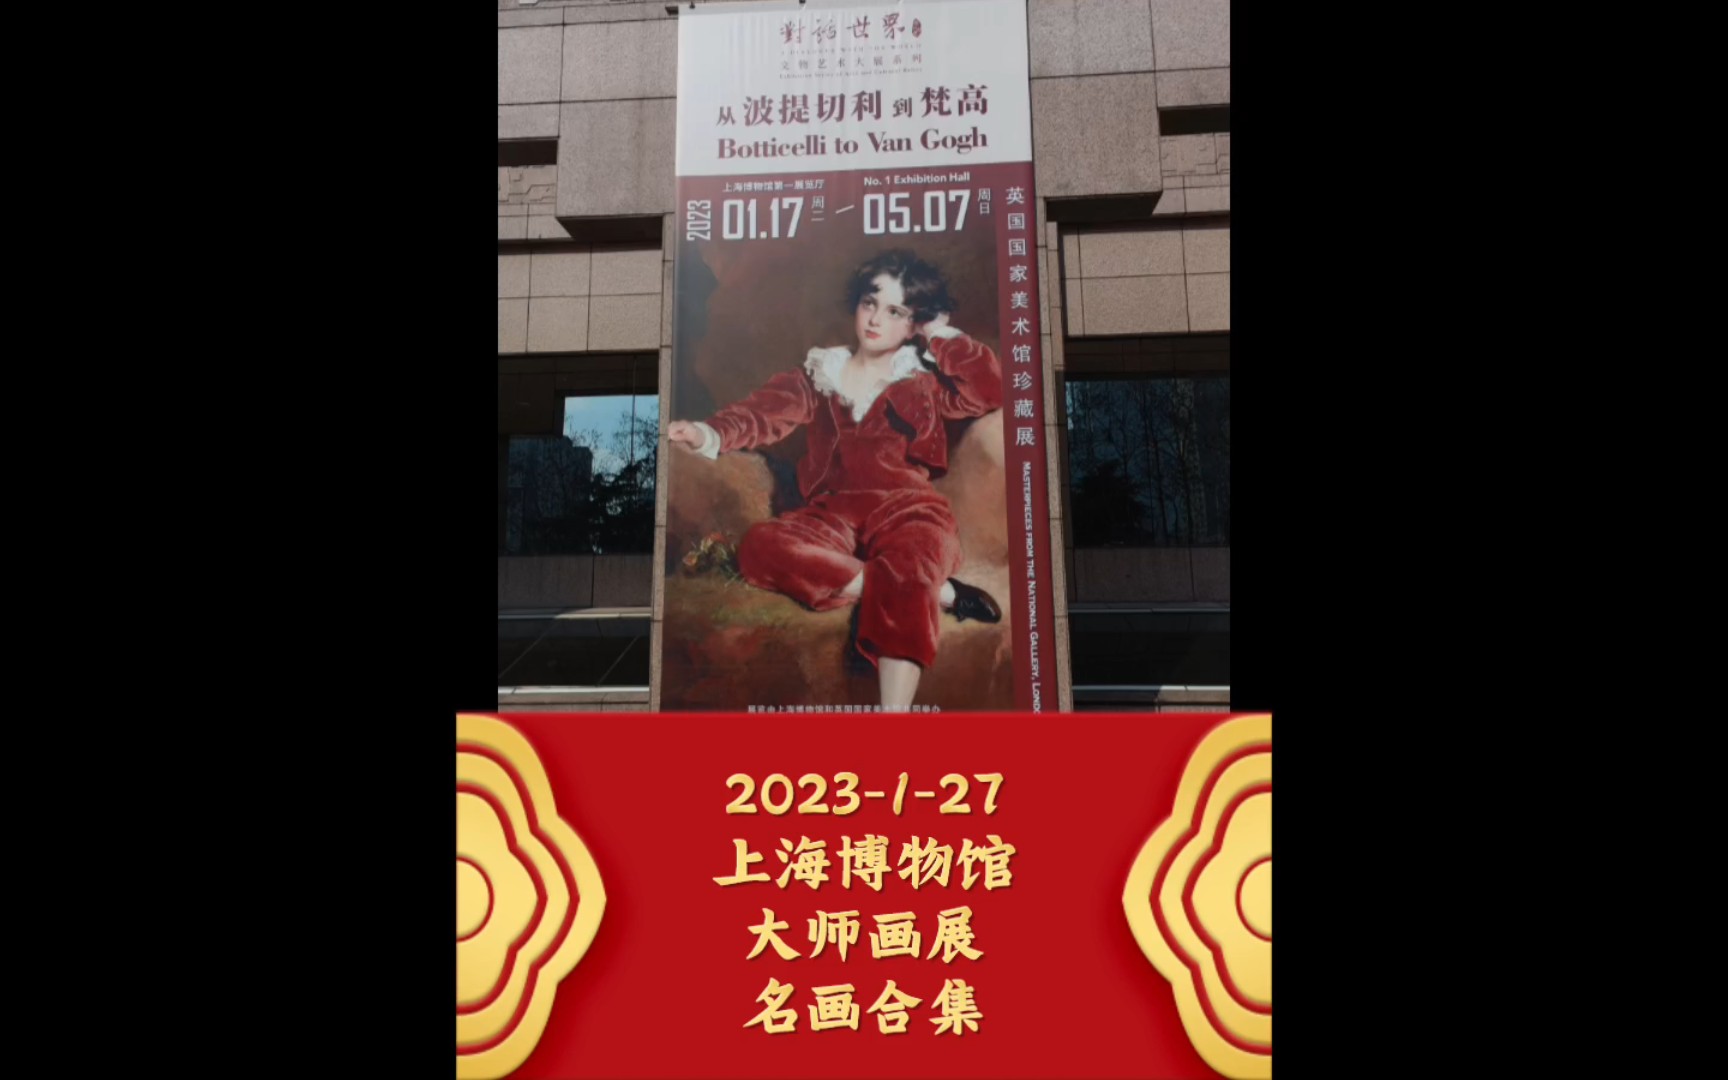 2023-1-27上海博物馆大师画展名画合集~英国国家美术馆珍藏